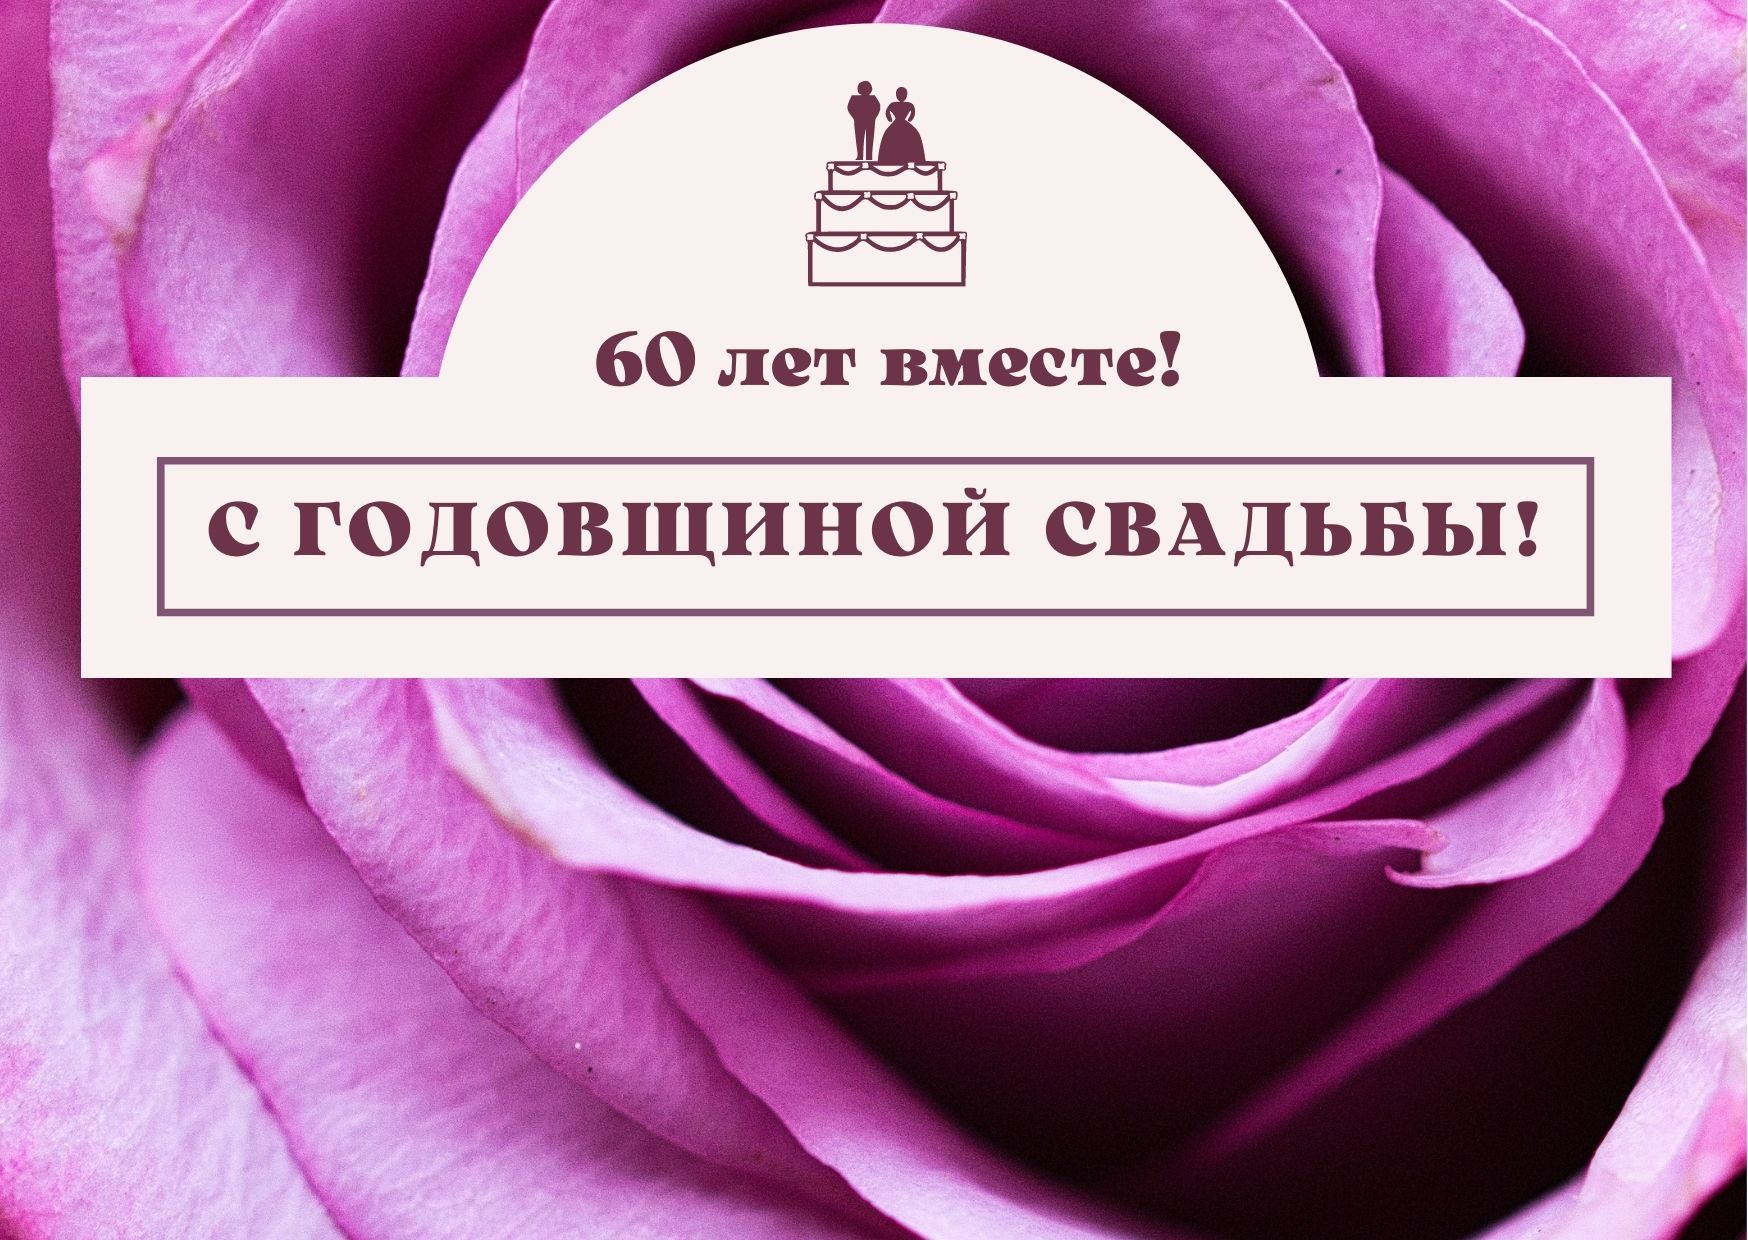 60 лет совместной жизни - бриллиантовая свадьба: поздравления, открытки, что подарить, фото-идеи торта